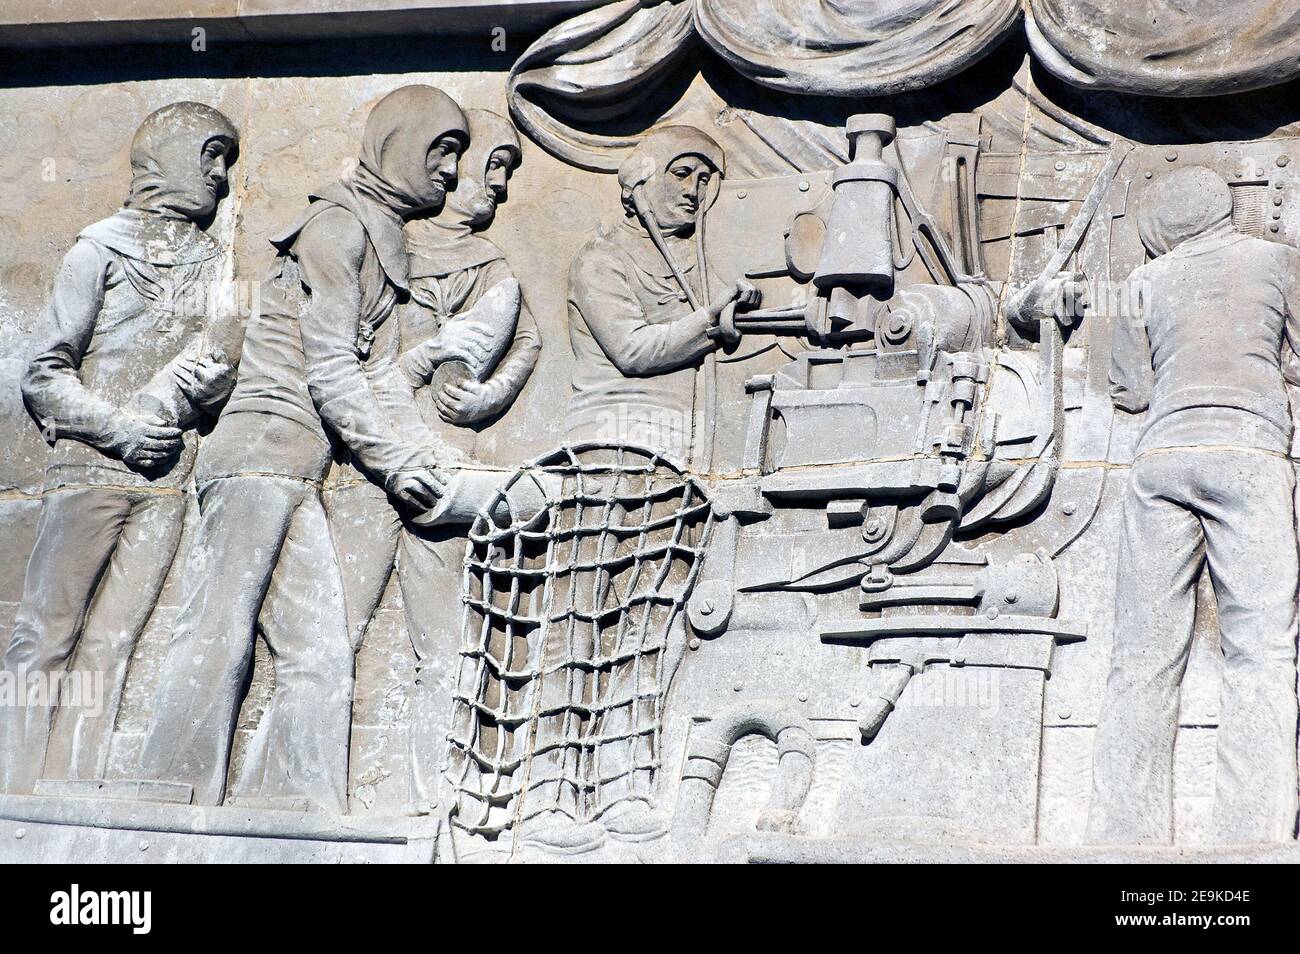 Bas relief des marins de la Marine royale chargement d'un fusil. Sculpté par Charles Sargeant Jagger (1885 - 1934). Mémorial de guerre de Cenotaph, place Guildhall, Portsmouth Banque D'Images